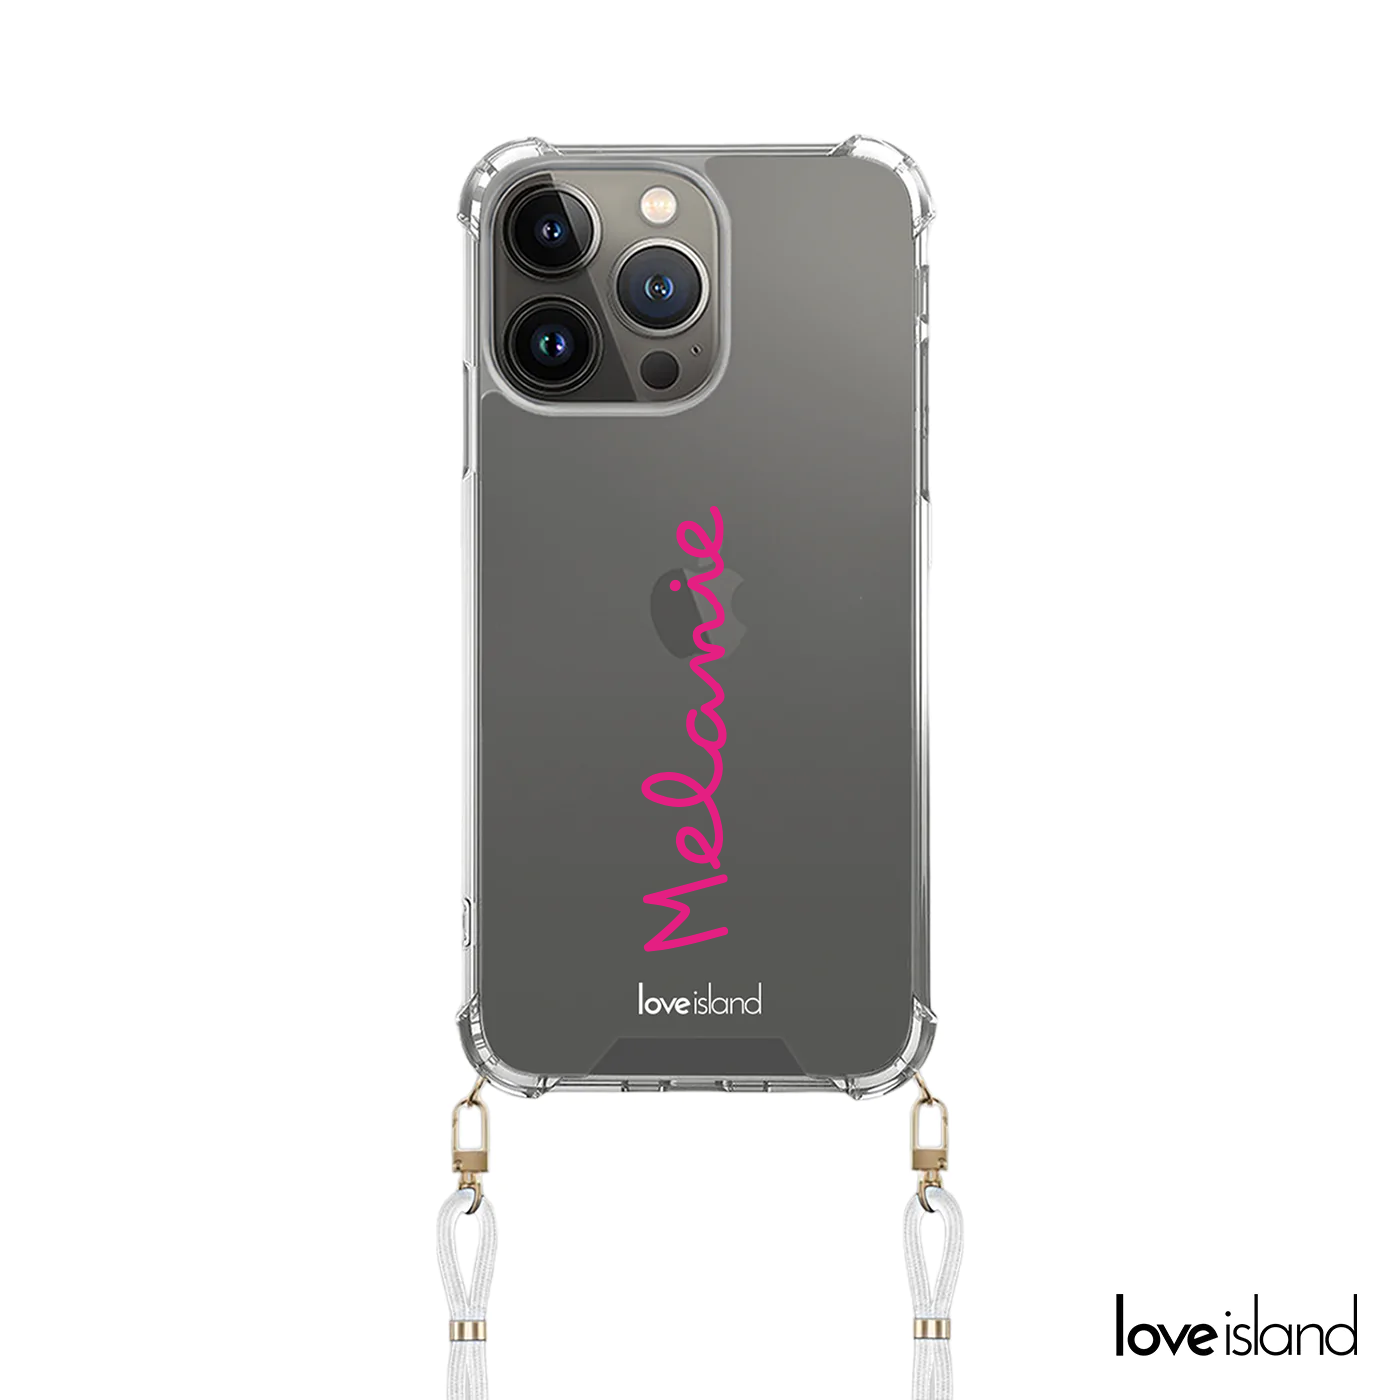 Officiële Love Island telefoonhoesje met koord met roze naam.